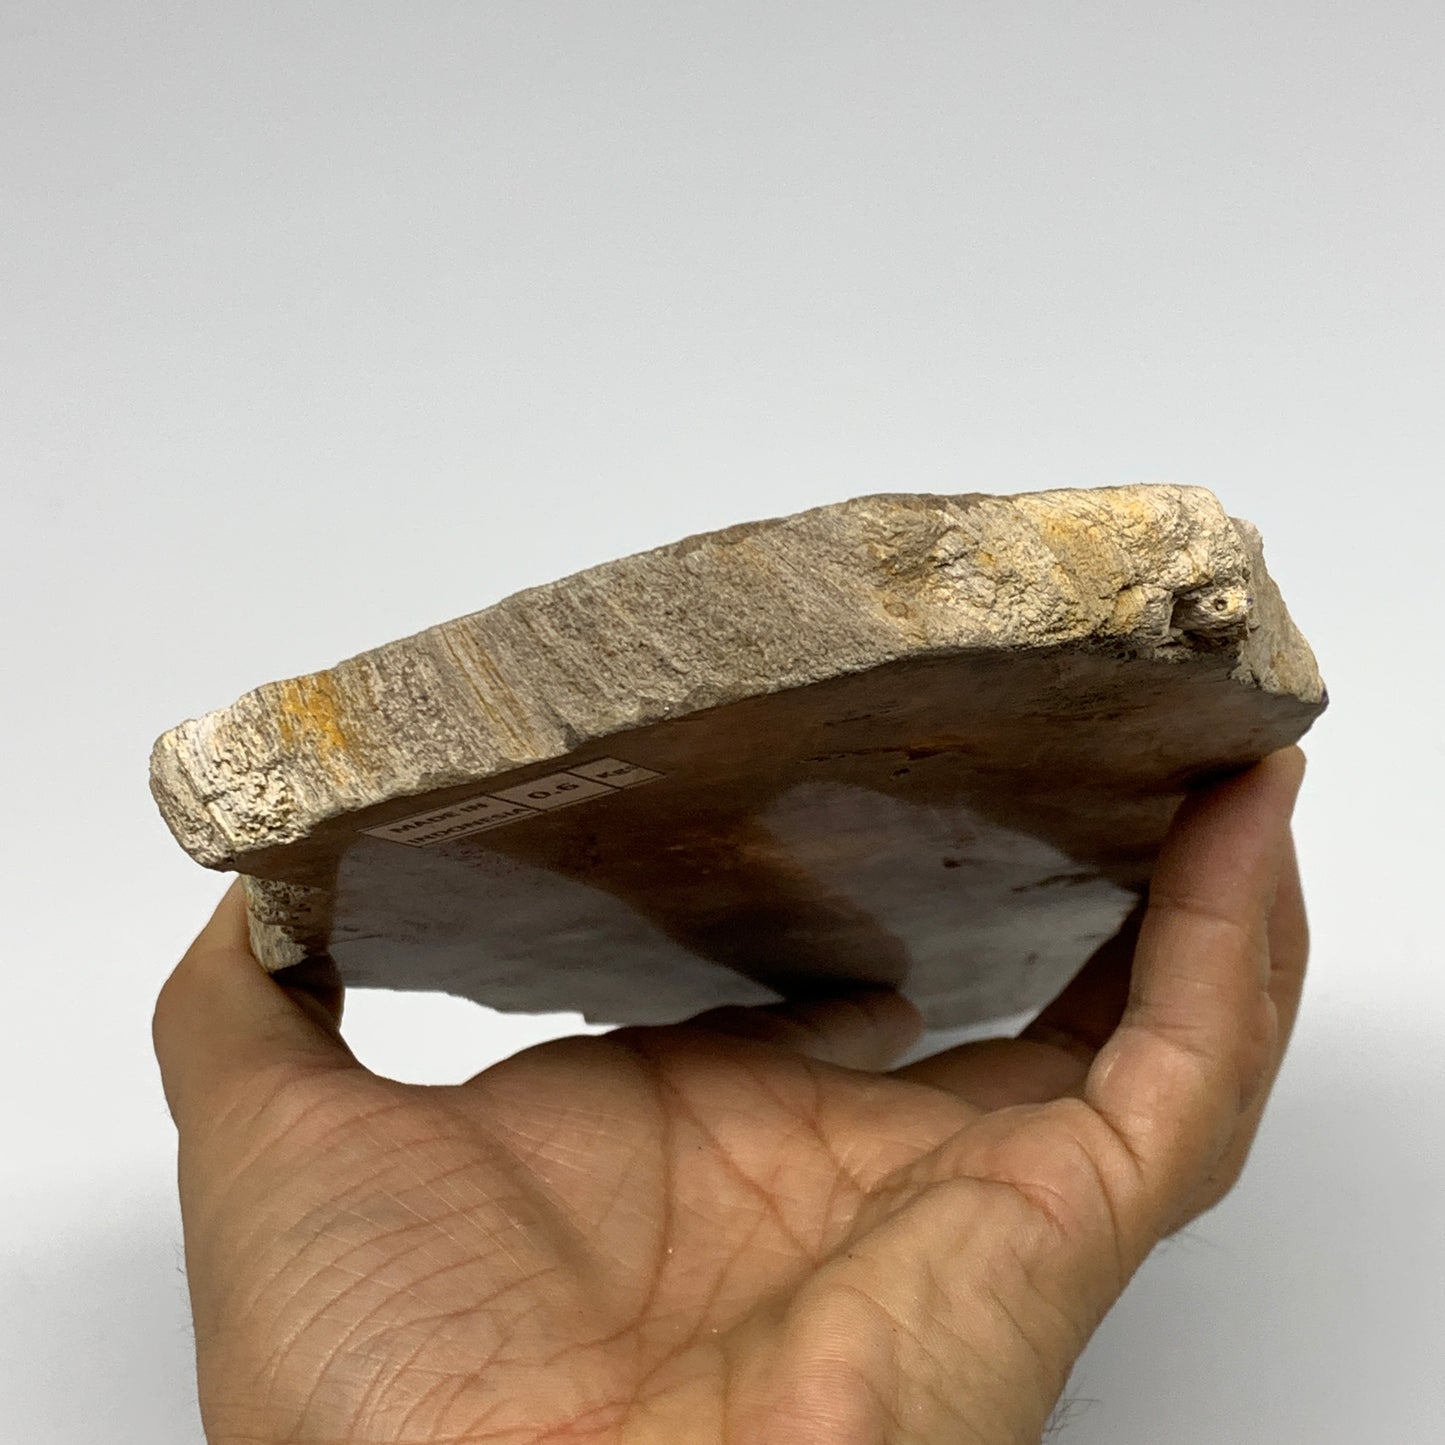 655g,8.25"x4.5"x0.6" Petrified Wood Slab Tree Branch Specimen, Minerals, B22675